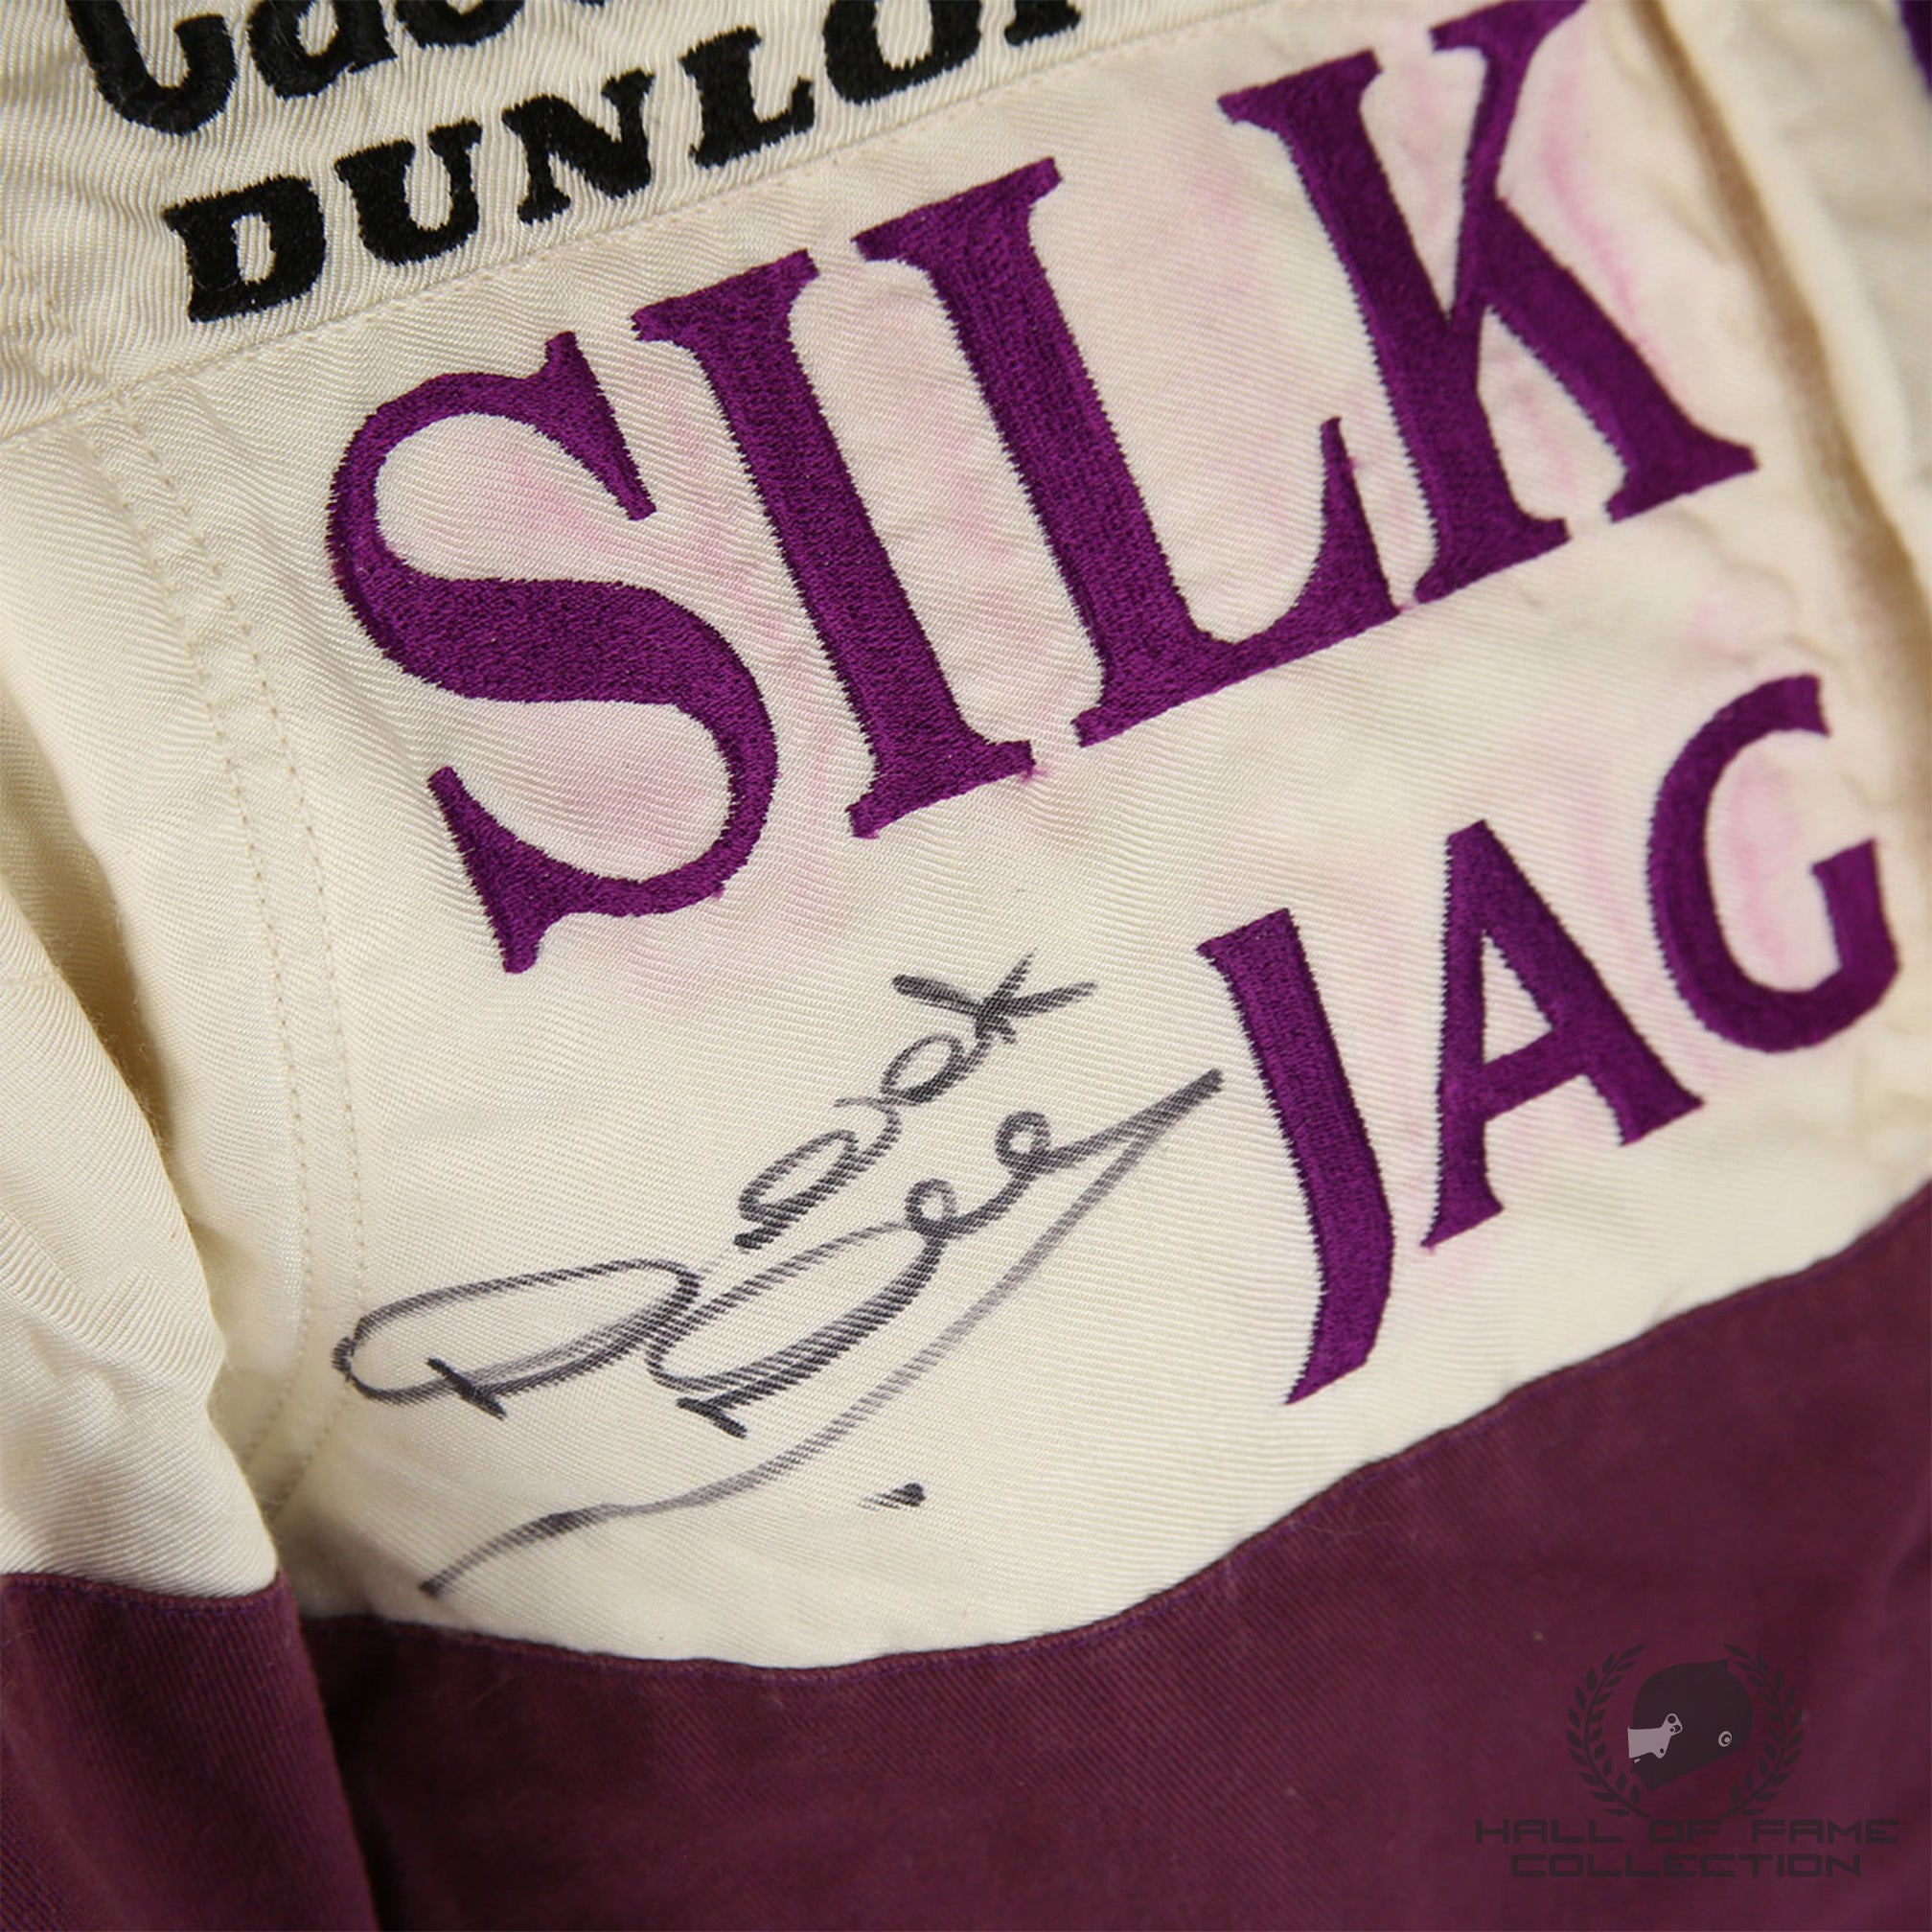 1989 Derek Daly Signed 24 Hrs of Le Mans Race Used Silk Cut Jaguar Sportscar Suit